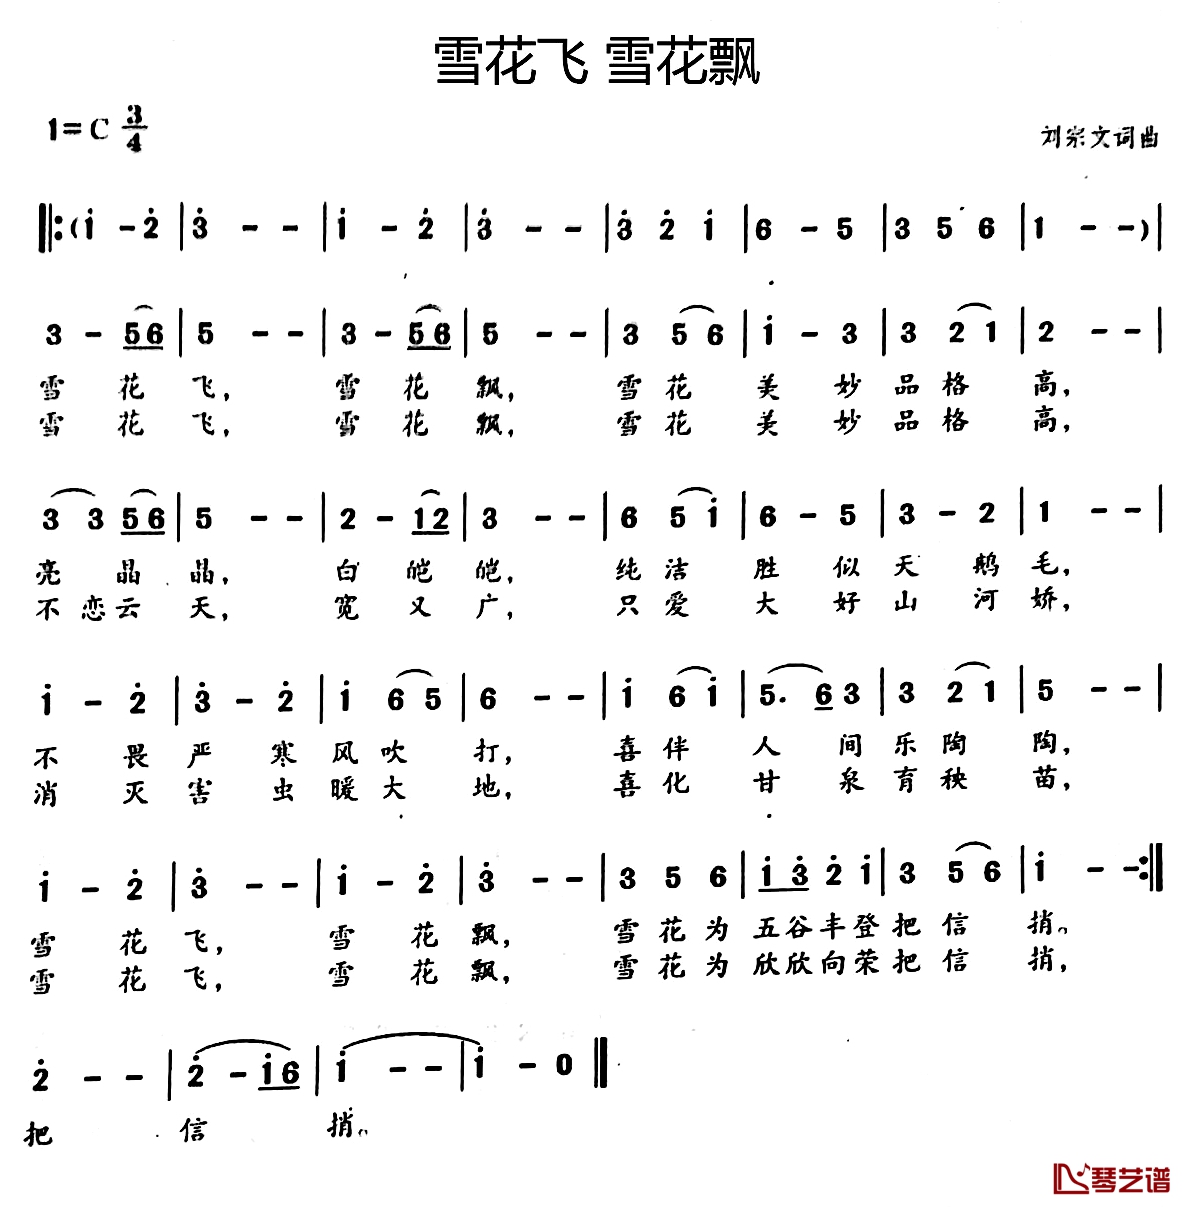 雪花飞 雪花飘简谱-刘宗文词/刘宗文曲1